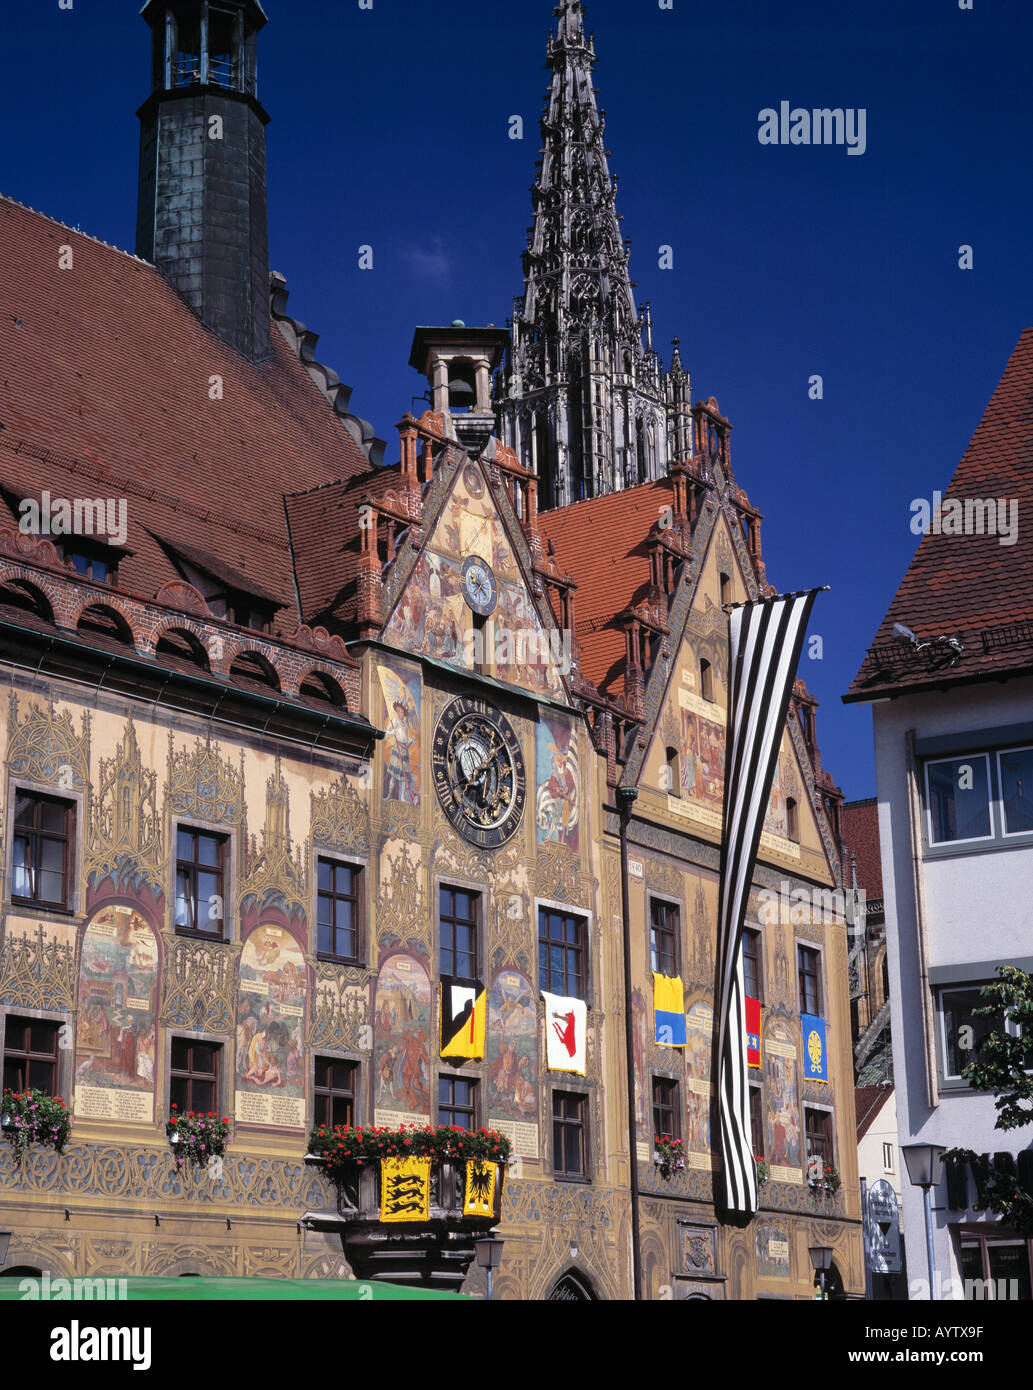 Gotik, Fischbacher stuben Rathaus, Wandmalerei, Fresko, astronomische Uhr, Kirchturm, Turm des Ulmer Münster, Ulm, Donau, Bade-Wurtemberg Banque D'Images